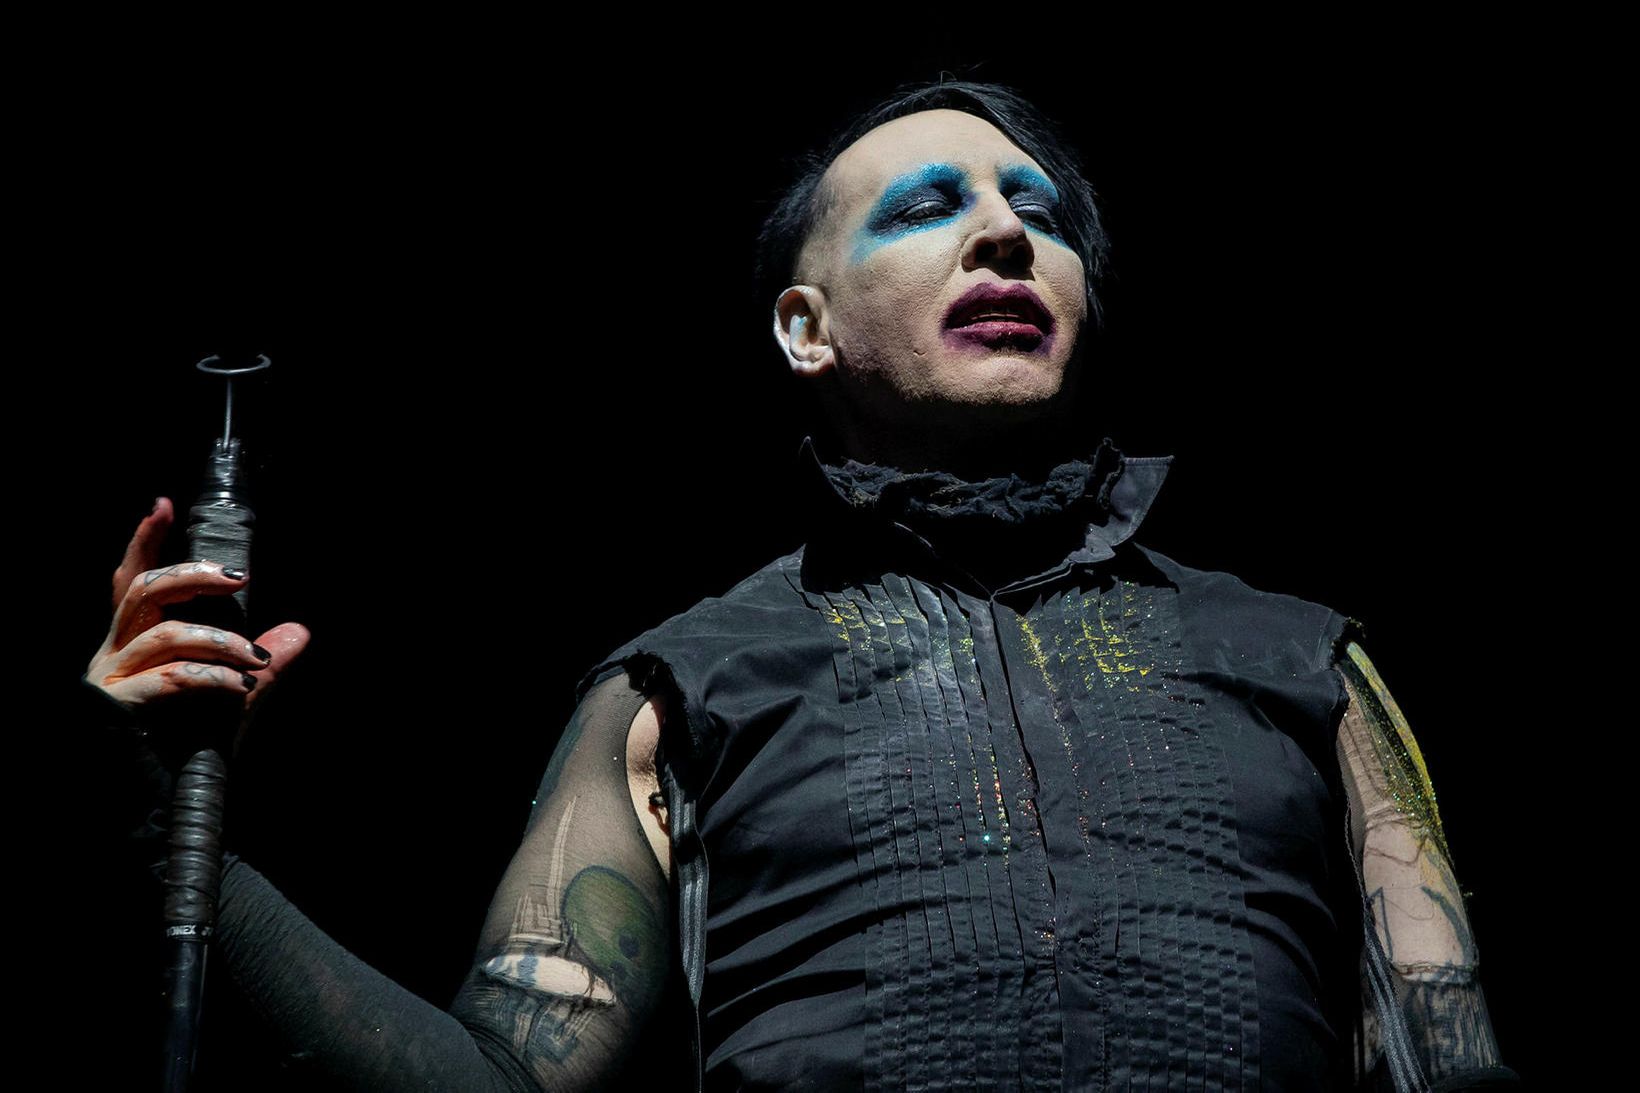 Handtökuheimild hefur verið gefin út á hendur Marilyn Manson.